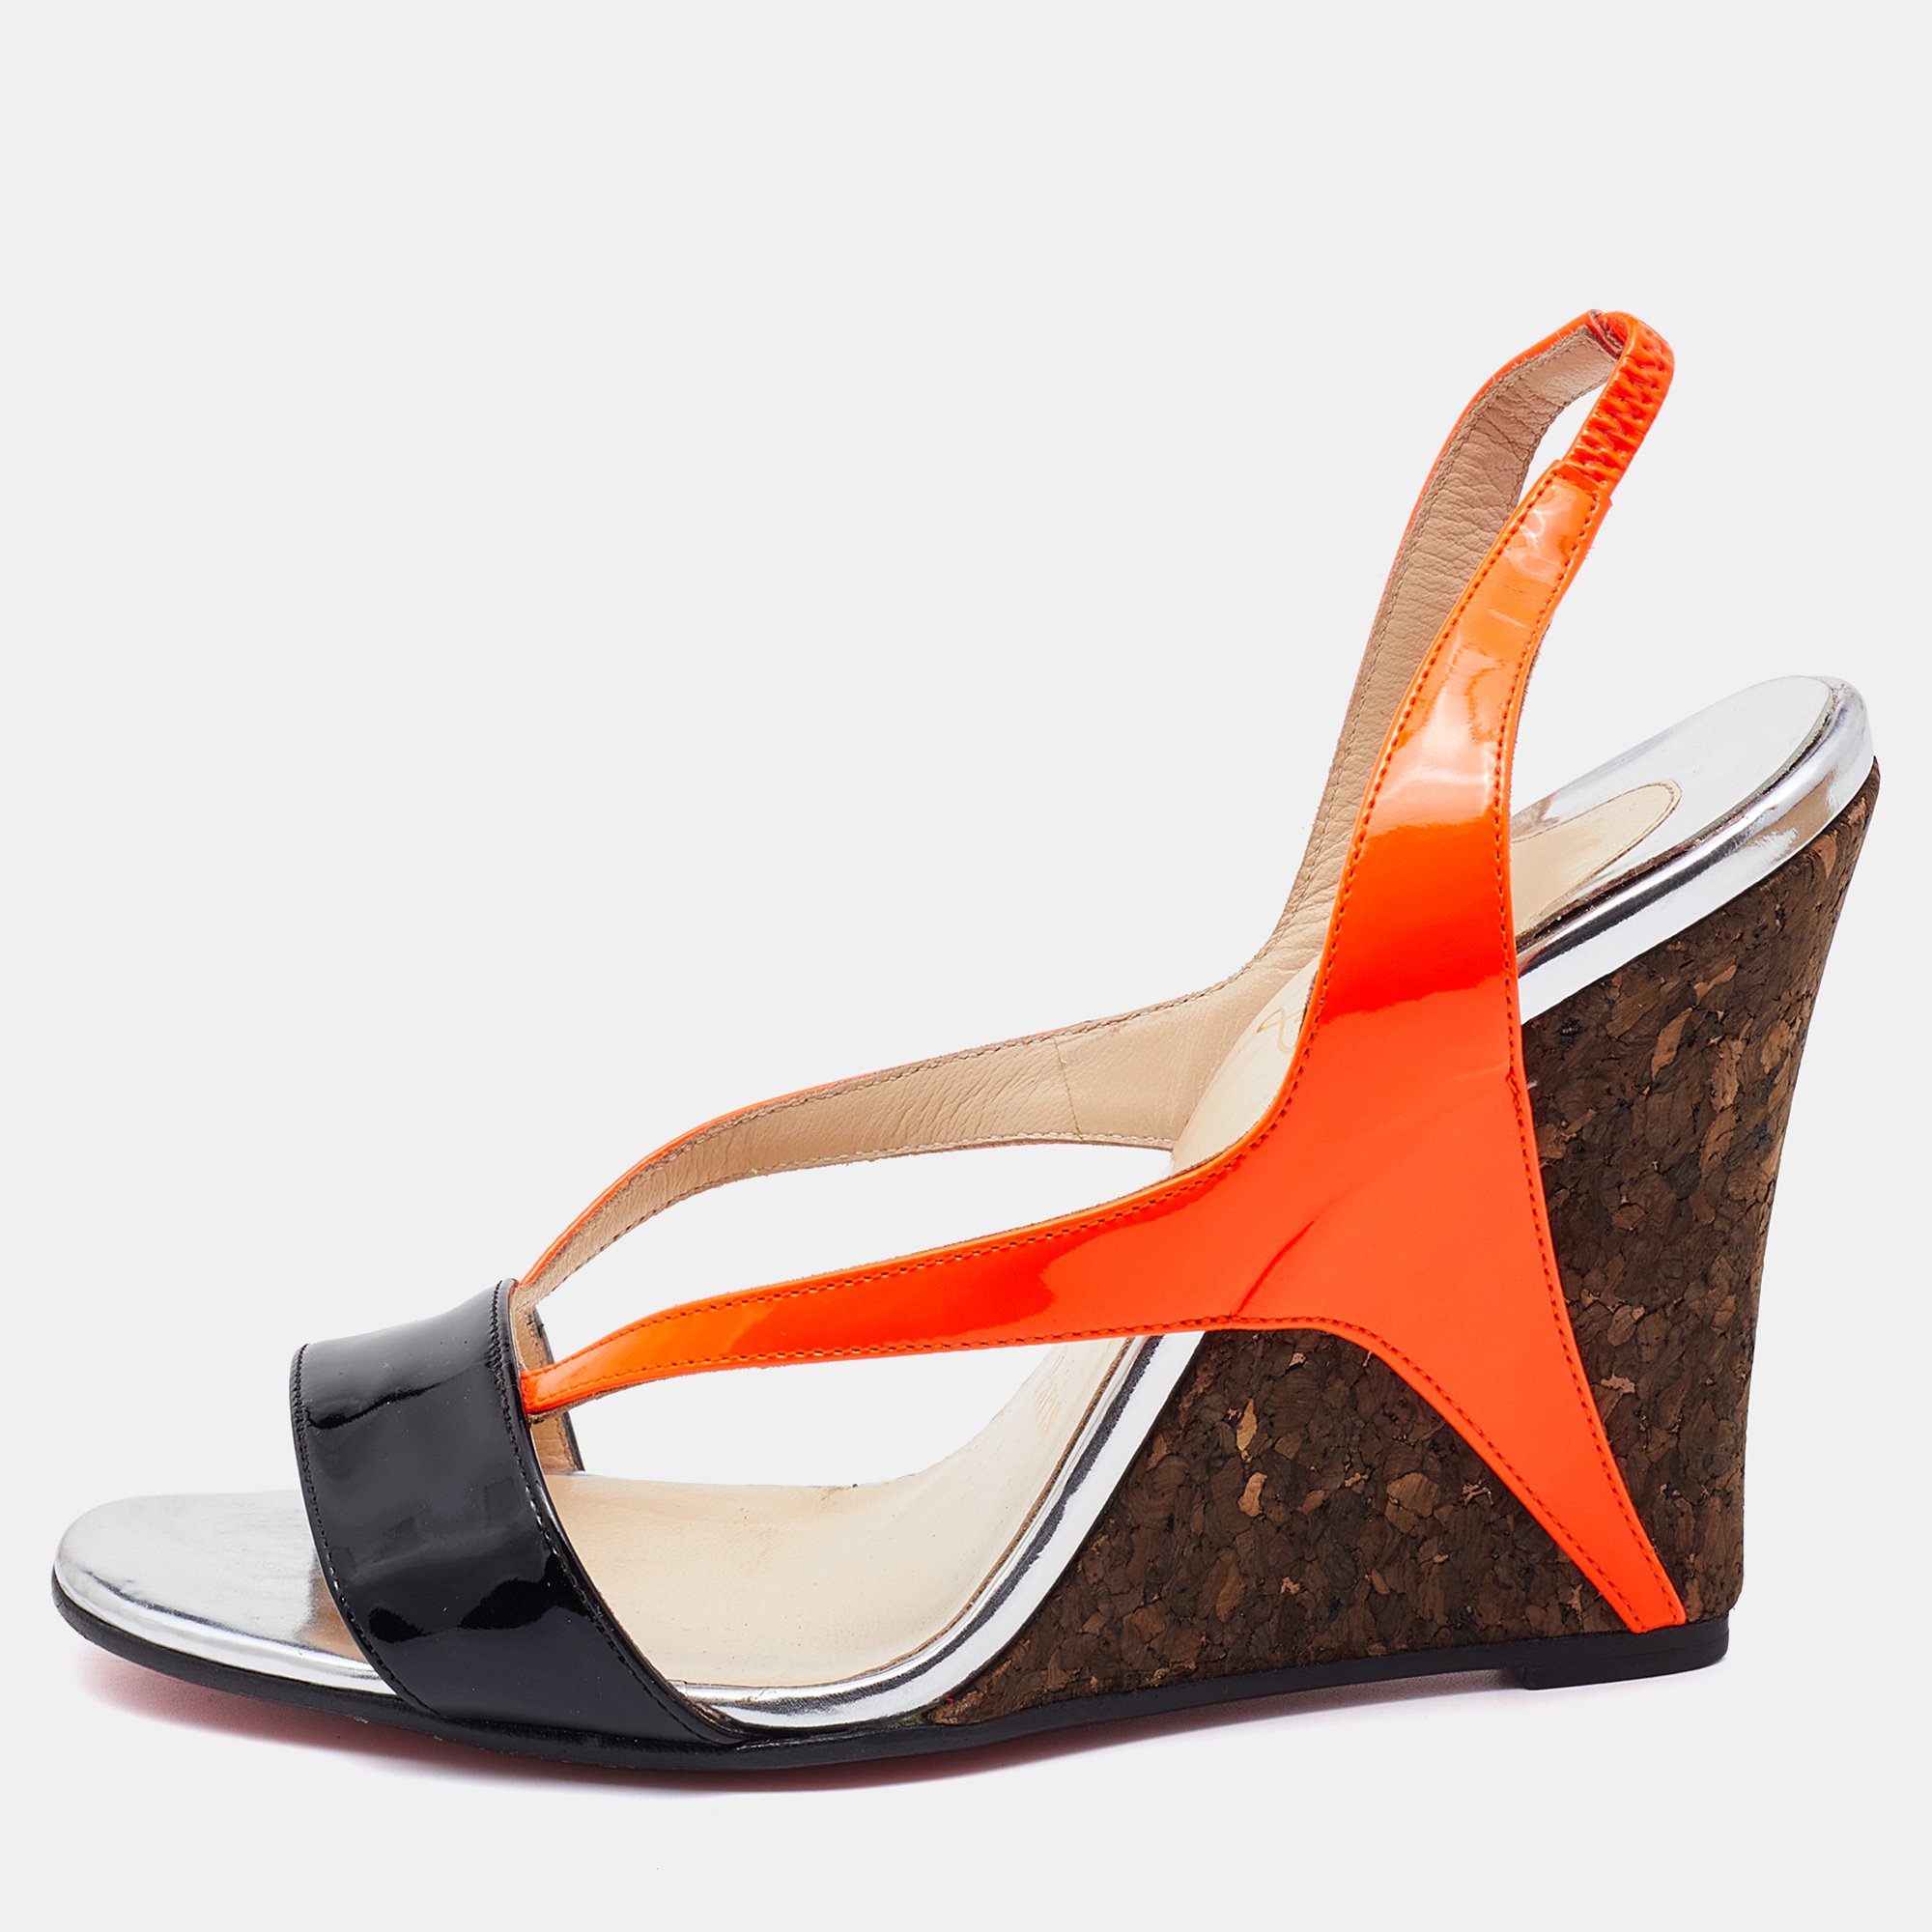 Christian louboutin orange/black patent leather yasmine slingback wedge sandals size 37